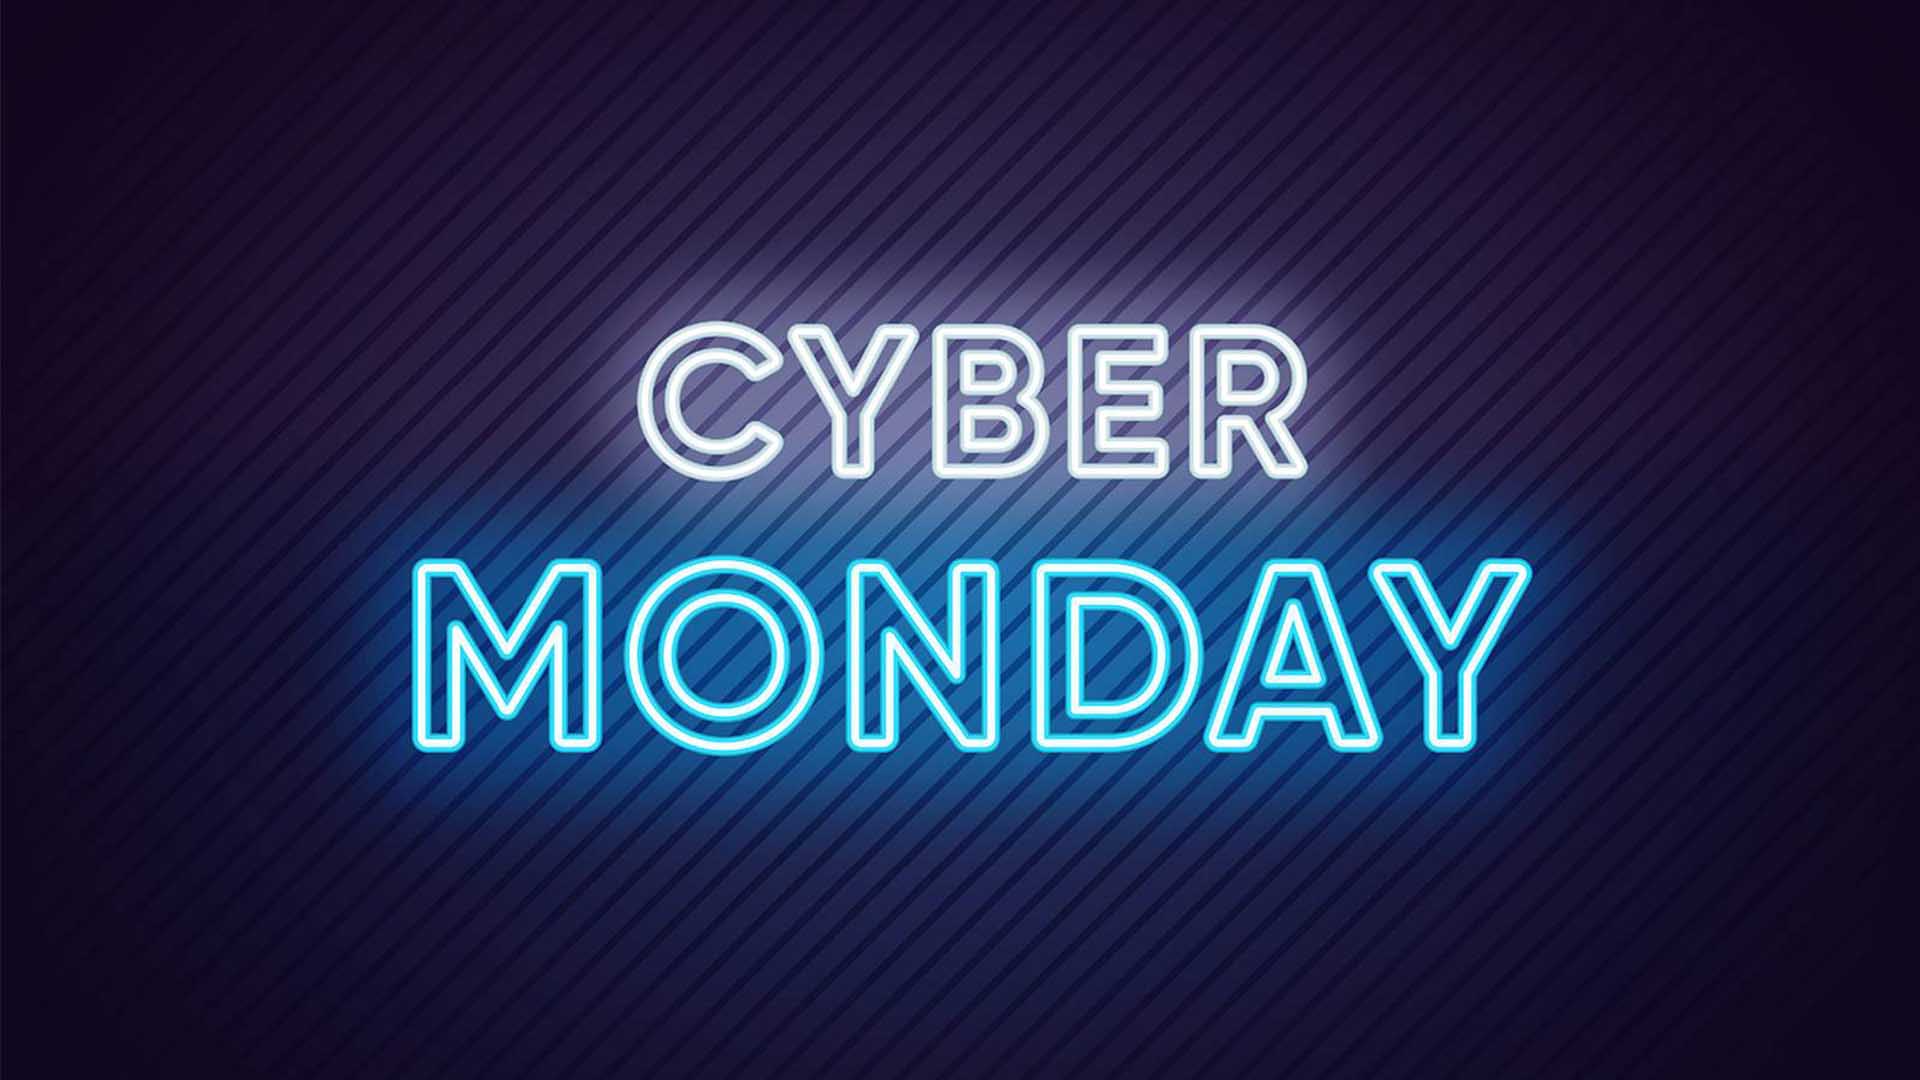 Cyber Monday nedir, nasıl ortaya çıkmıştır? 2022 Siber Pazartesi ne zaman?